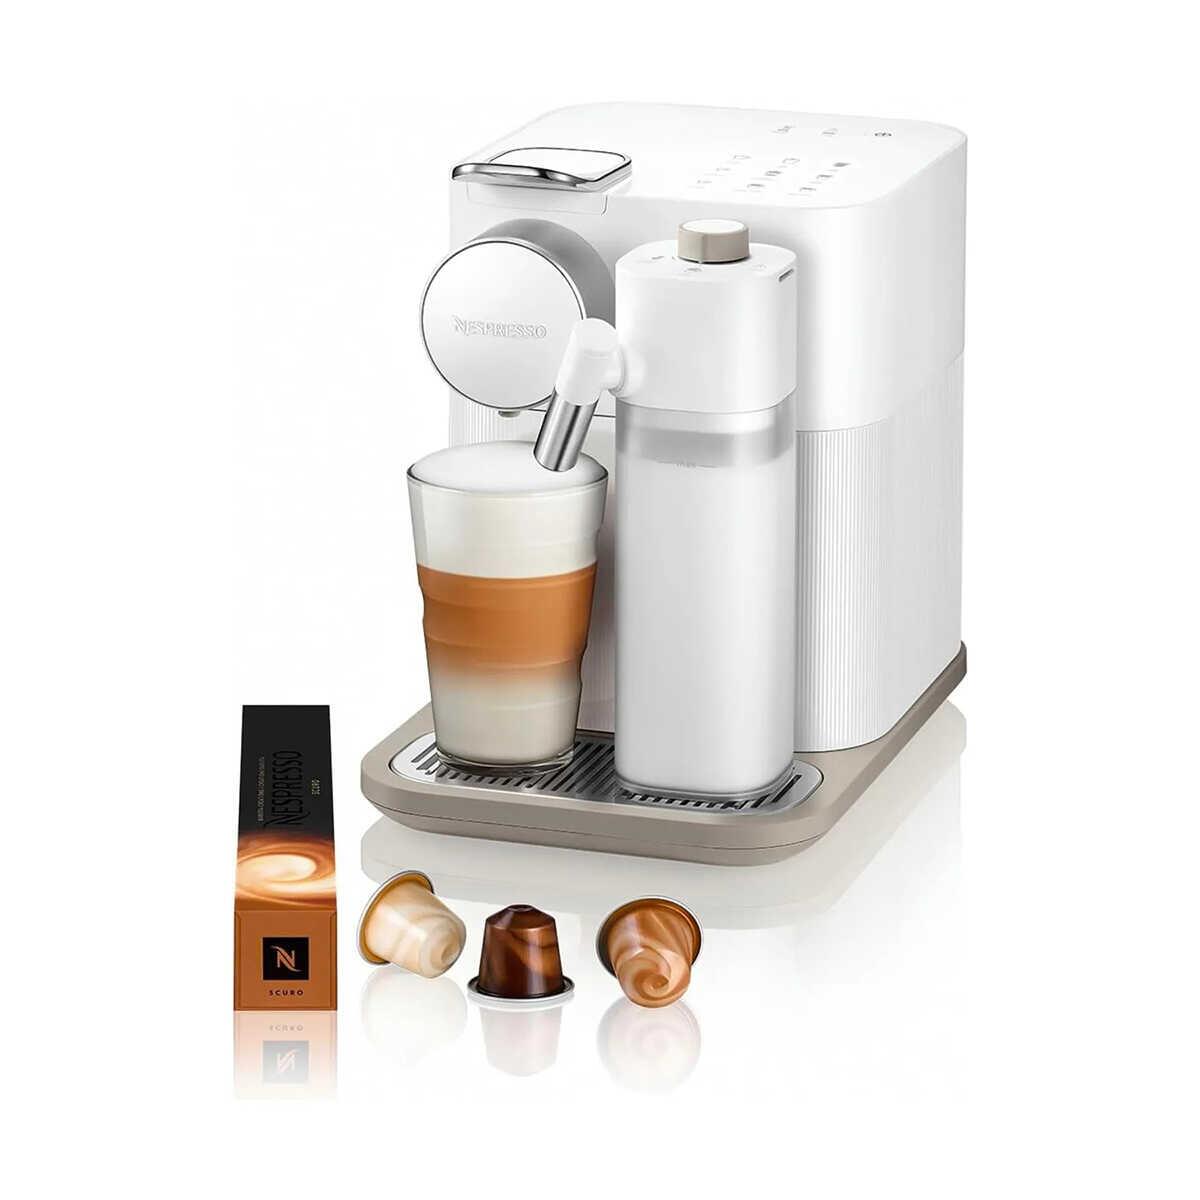 Nespresso Gran Lattissima White Coffee Machine F541 1